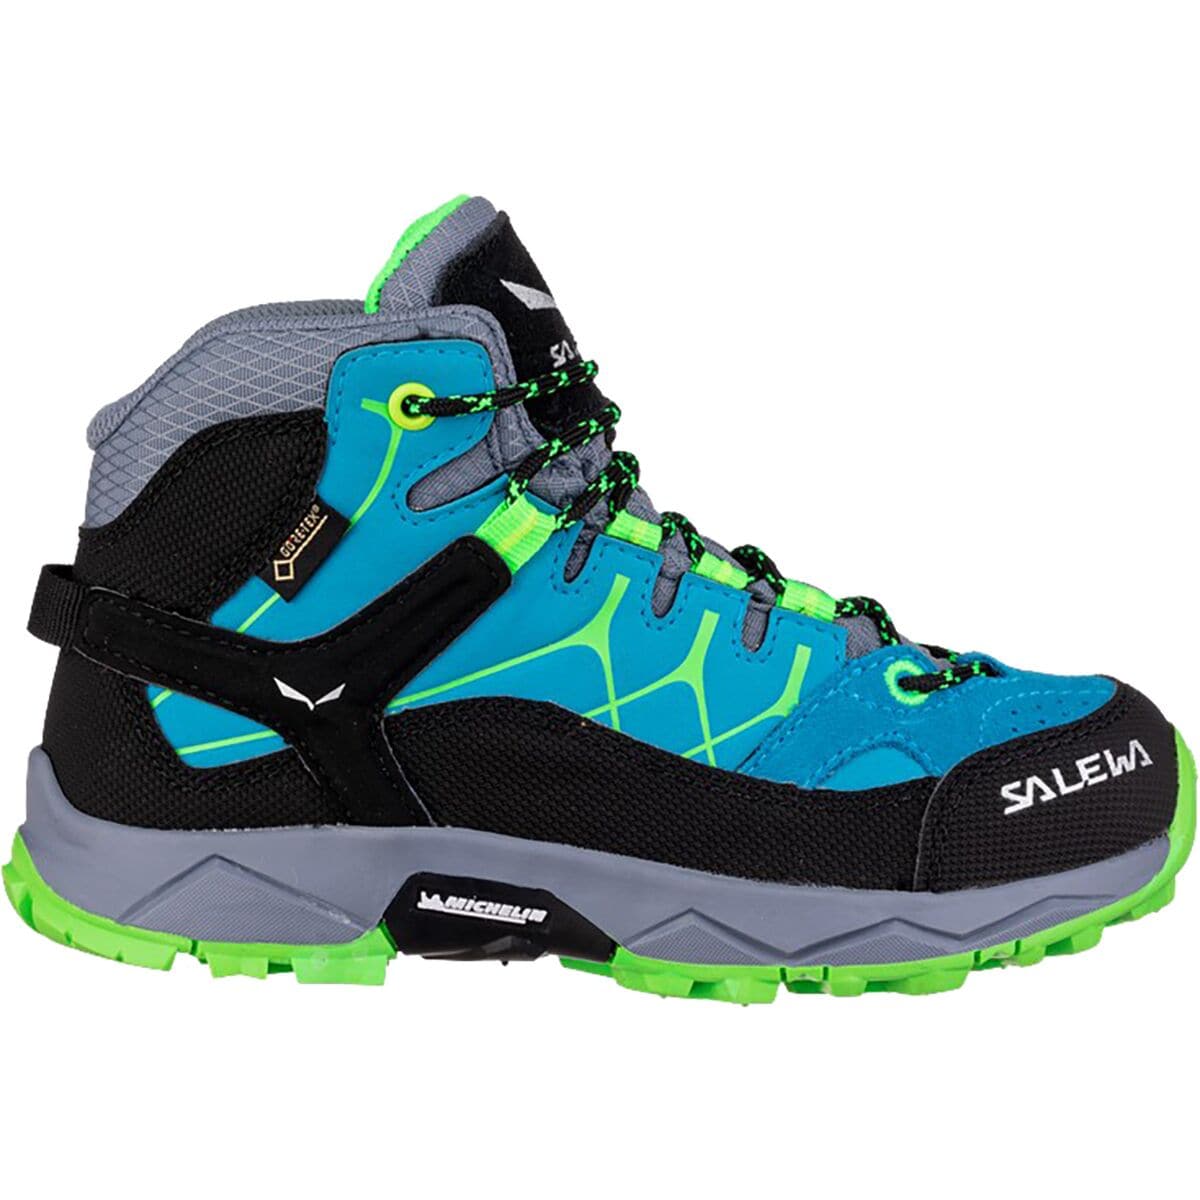 Salewa Alp Trainer Mid GTX Hiking Boot - Kids' Blue Danube/Fluo Green 1.0